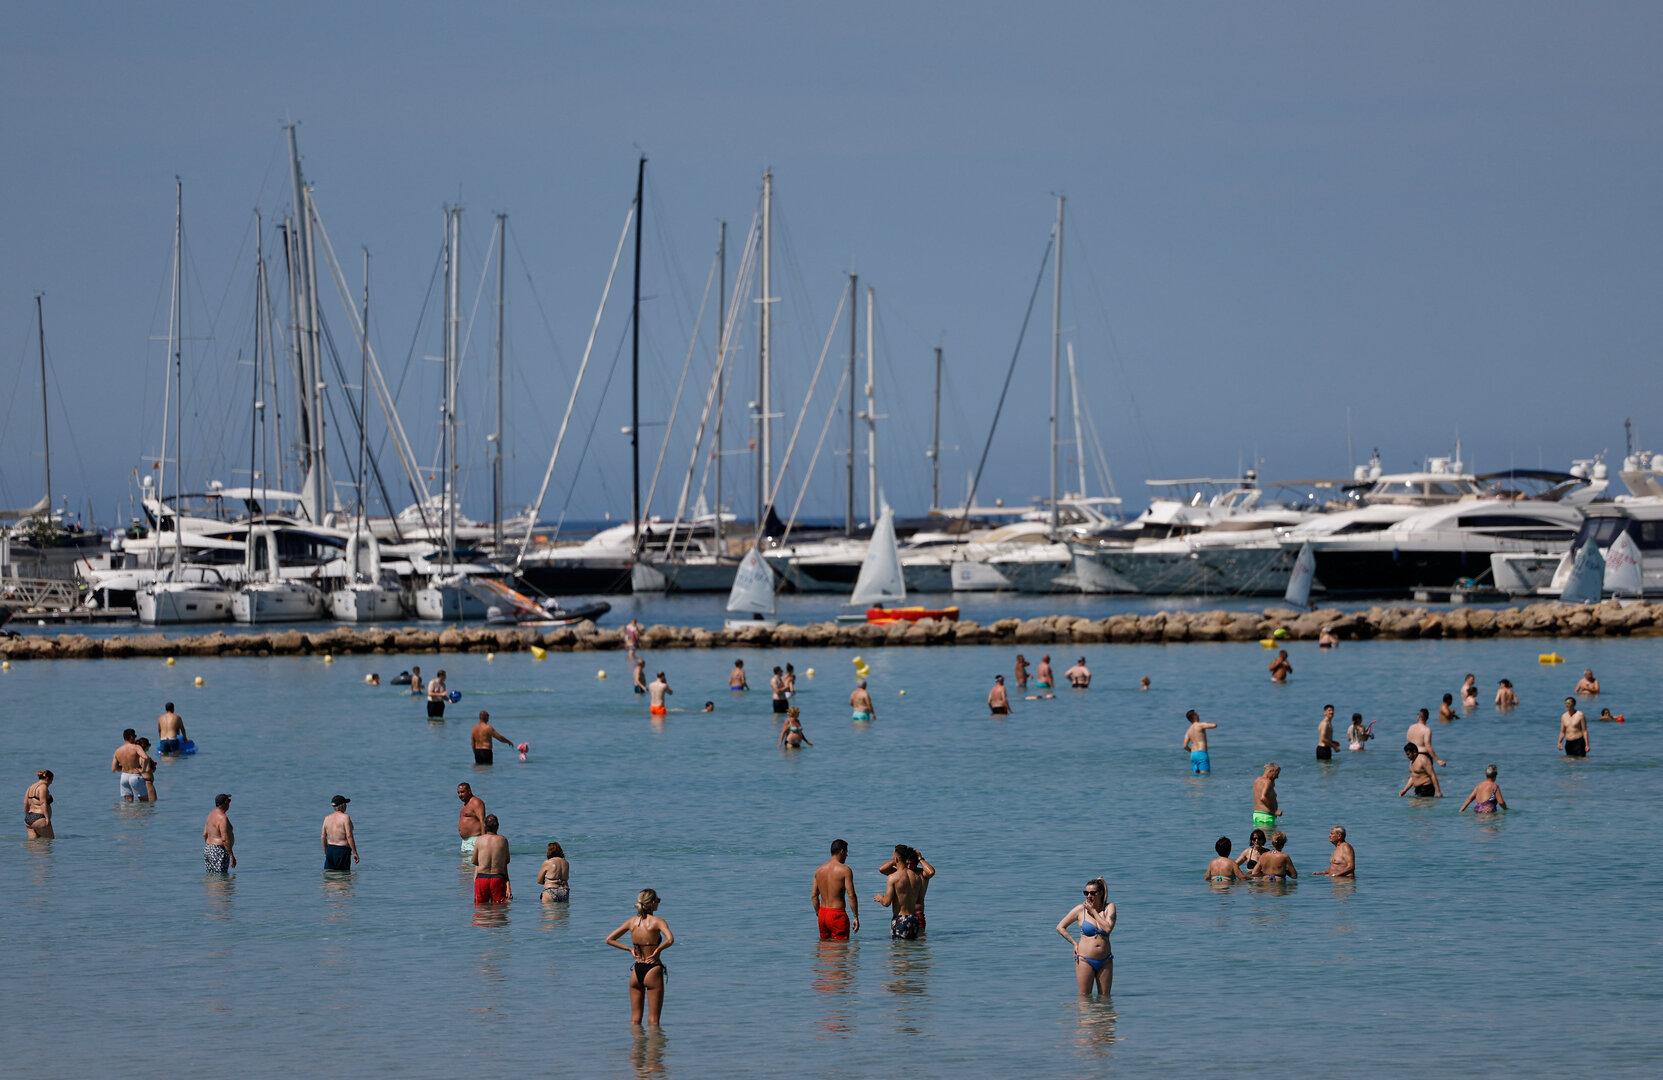 Mallorca-Fähre wegen Feuer evakuiert: Passagiere 24 Stunden auf See